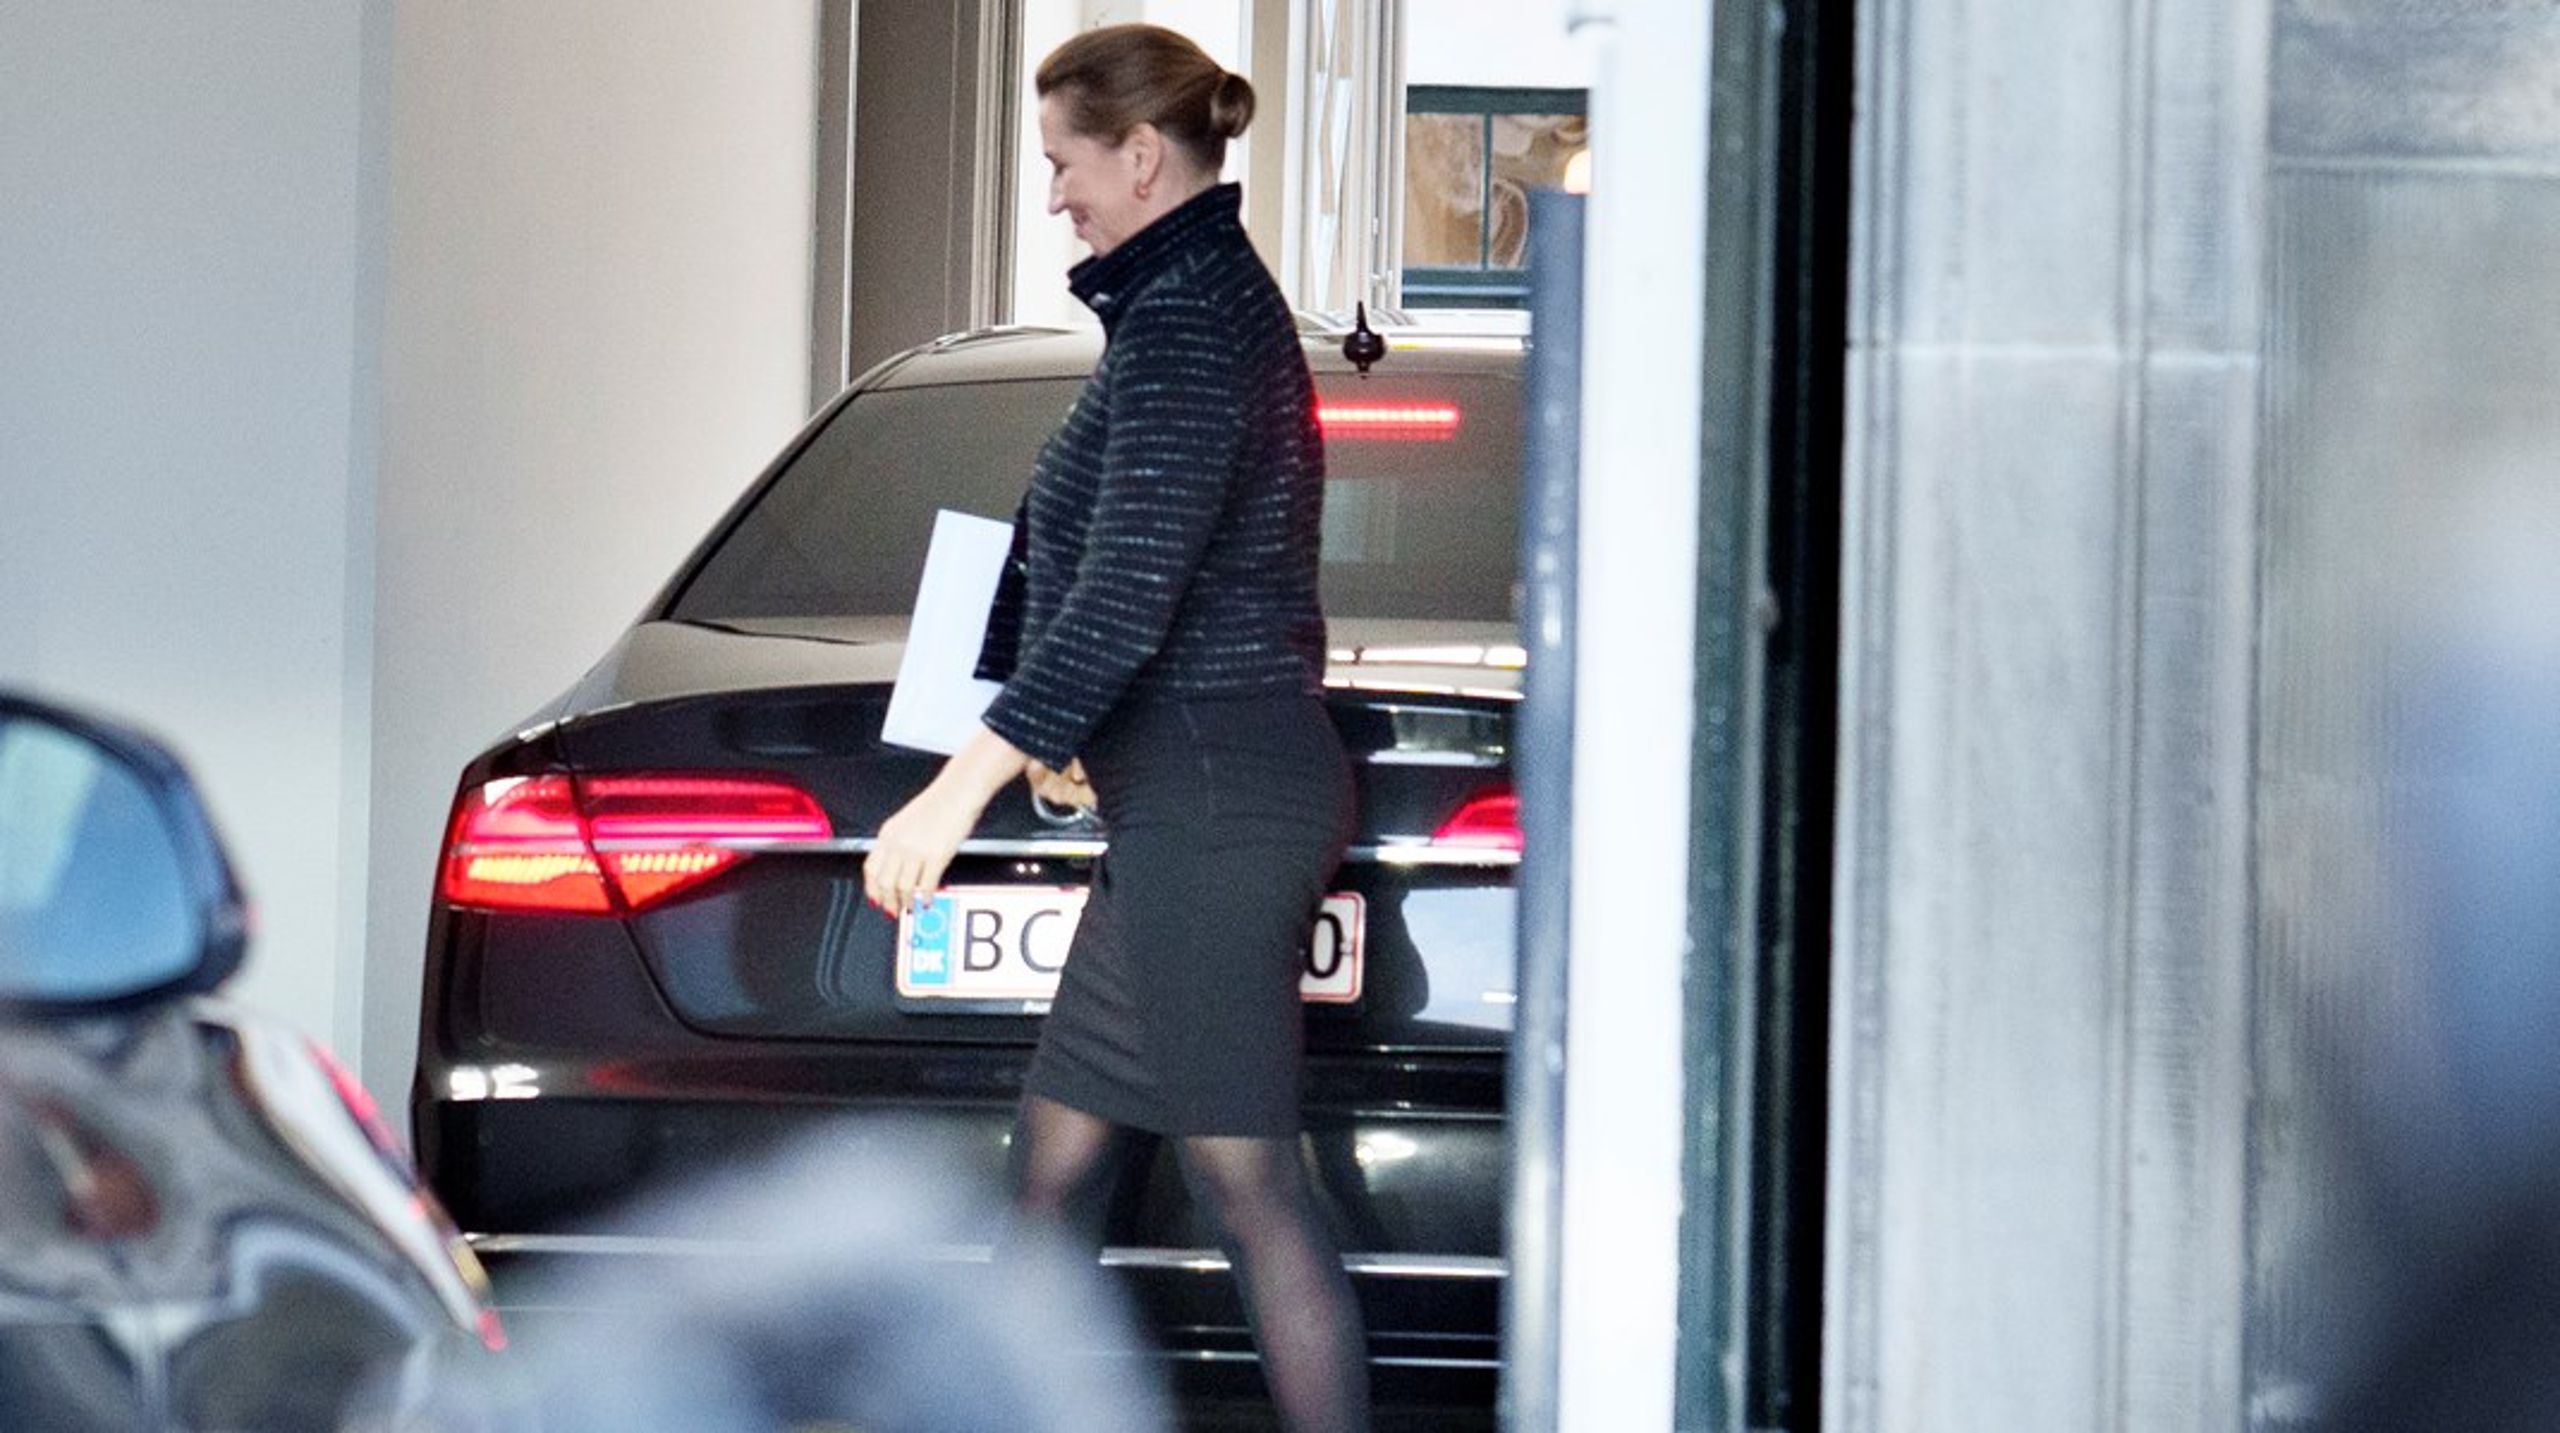 Statsministeren ankom onsdag&nbsp;formiddag til Amalienborg. Her meddelte hun dronningen at regeringen går af.